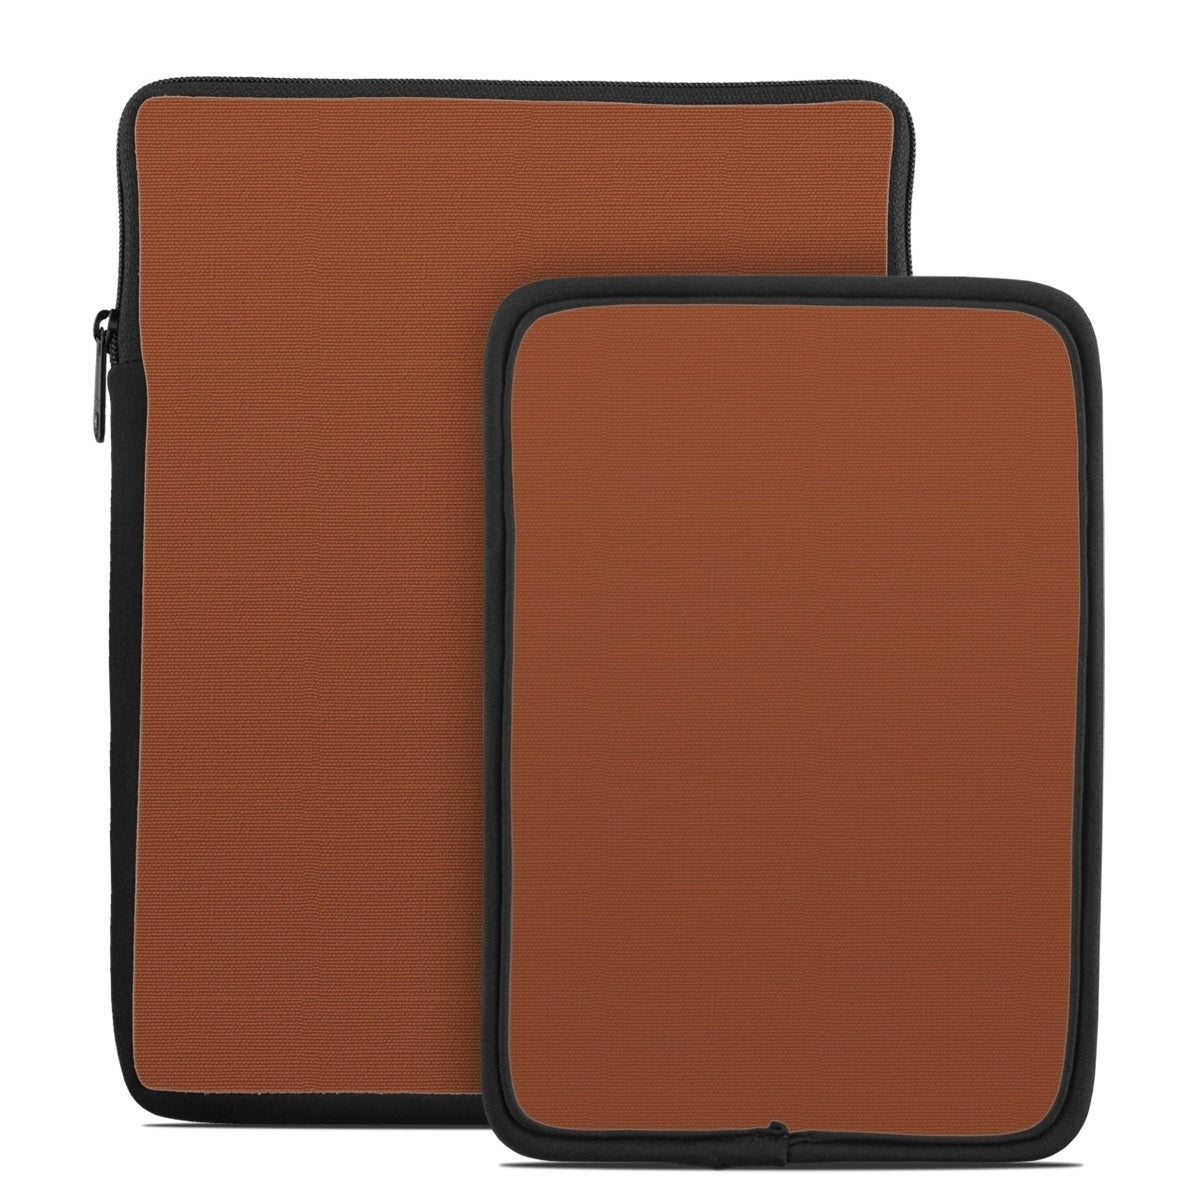 Solid State Cinnamon - Tablet Sleeve